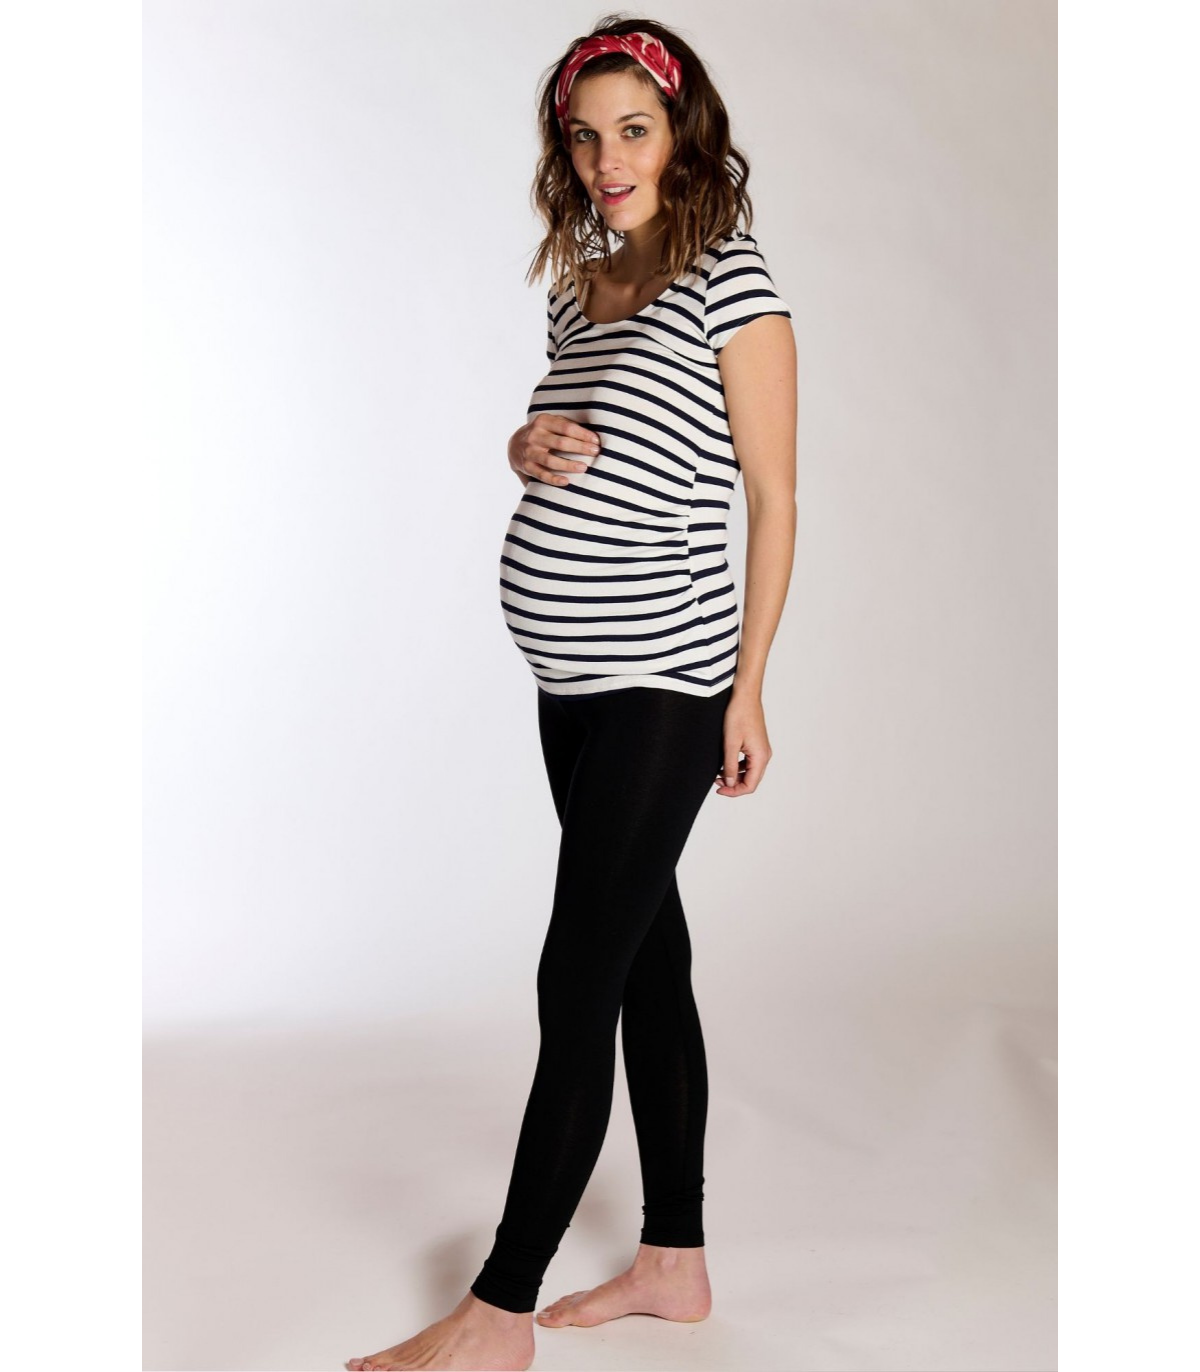 XXL - Blanc - Leggings de maternité pour femmes, vêtements de